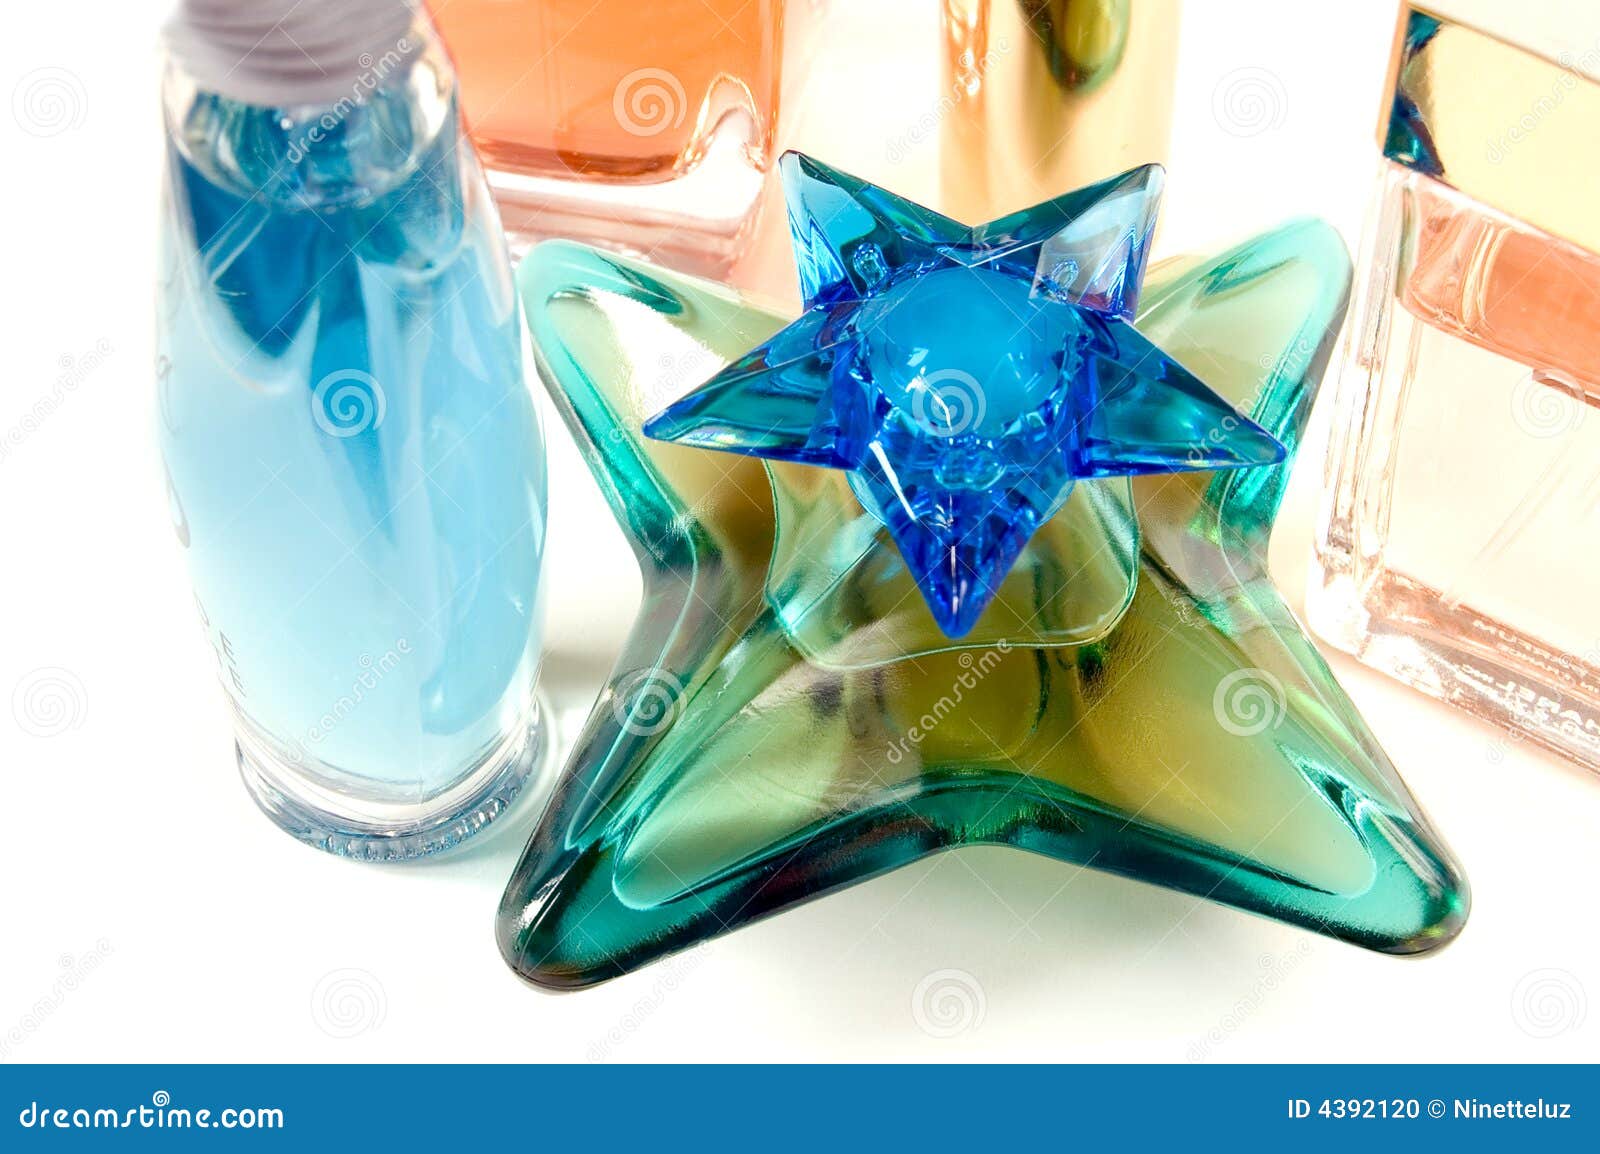 blue star bottle perfume